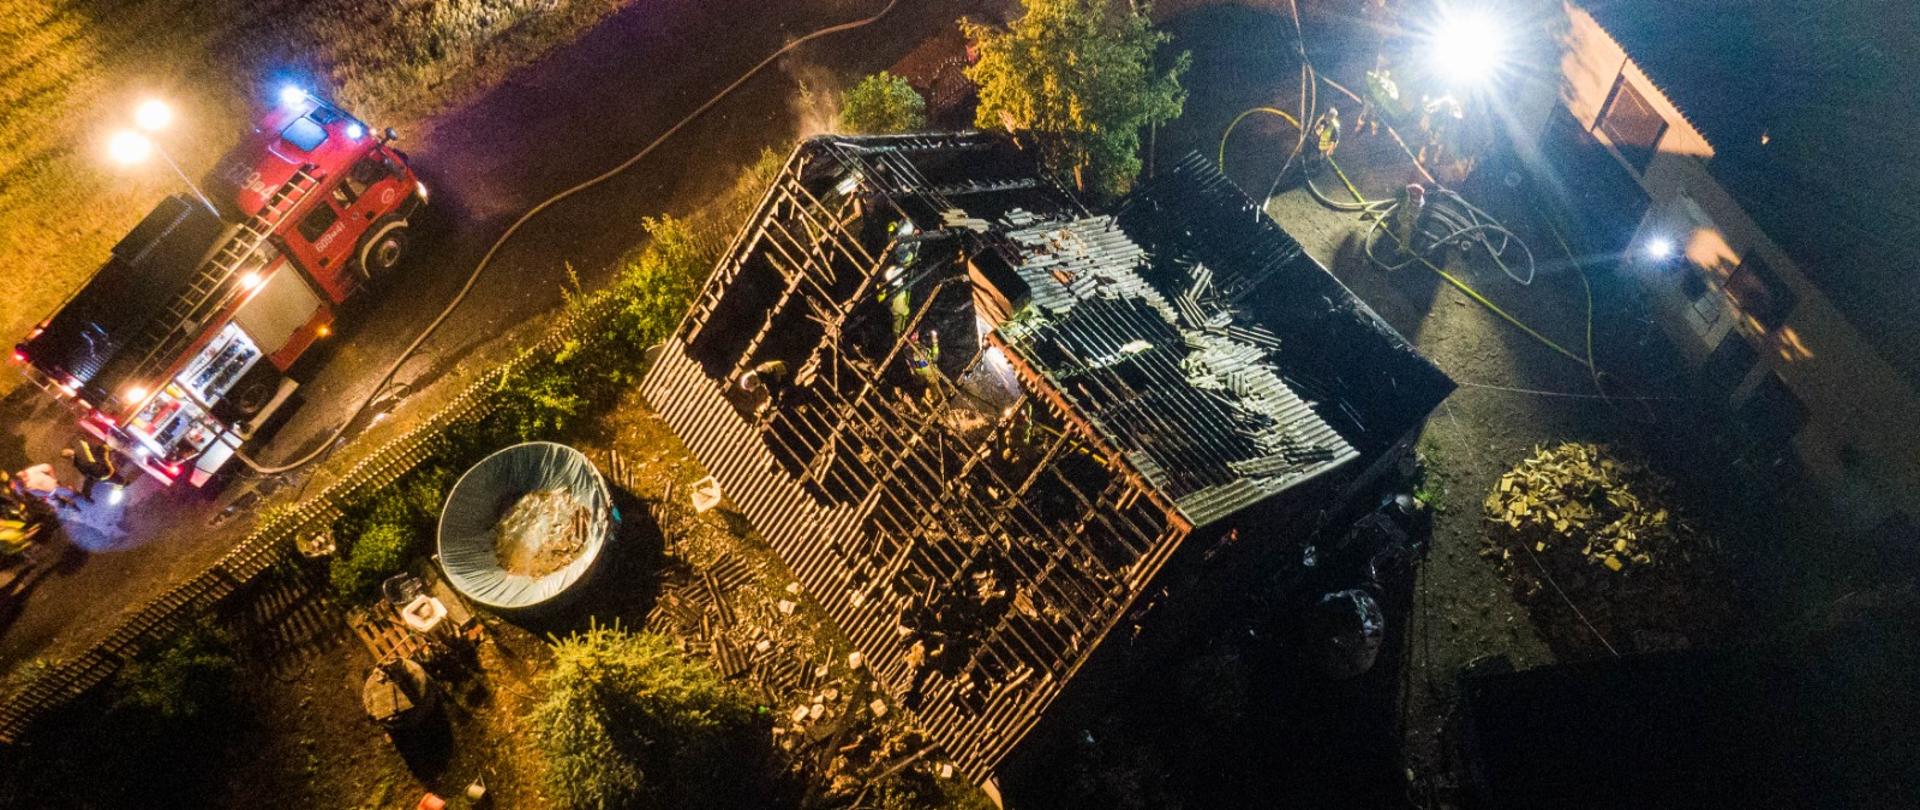 Zdjęcie z drona pokazuje samochód pożarniczy i widok poddasza spalonego 